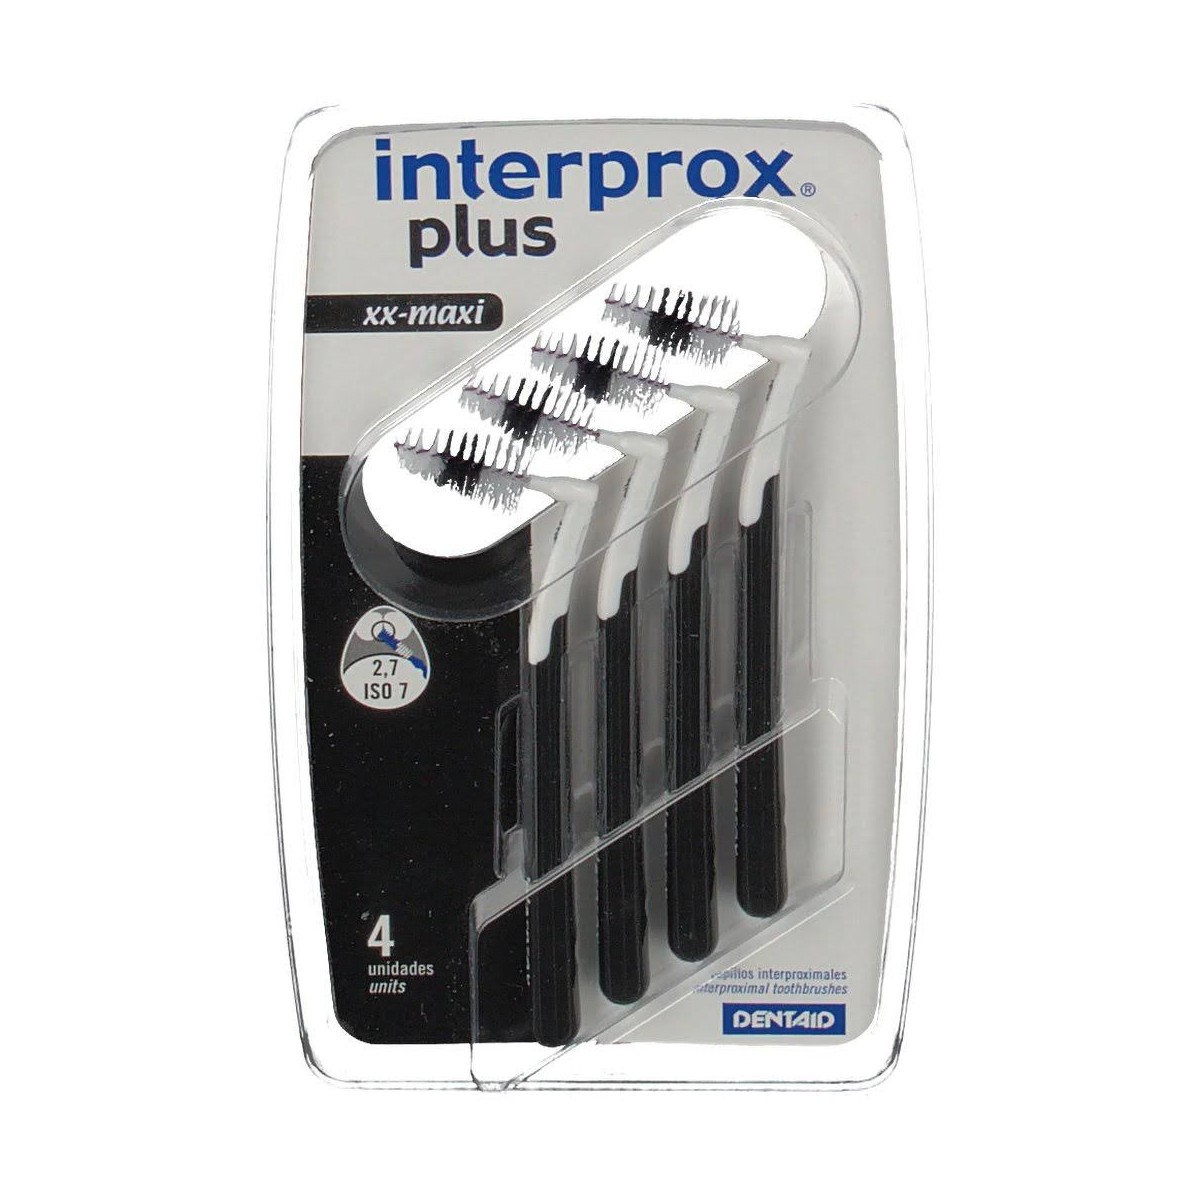 cepillo-interprox-plus-xx-maxi-4-ud